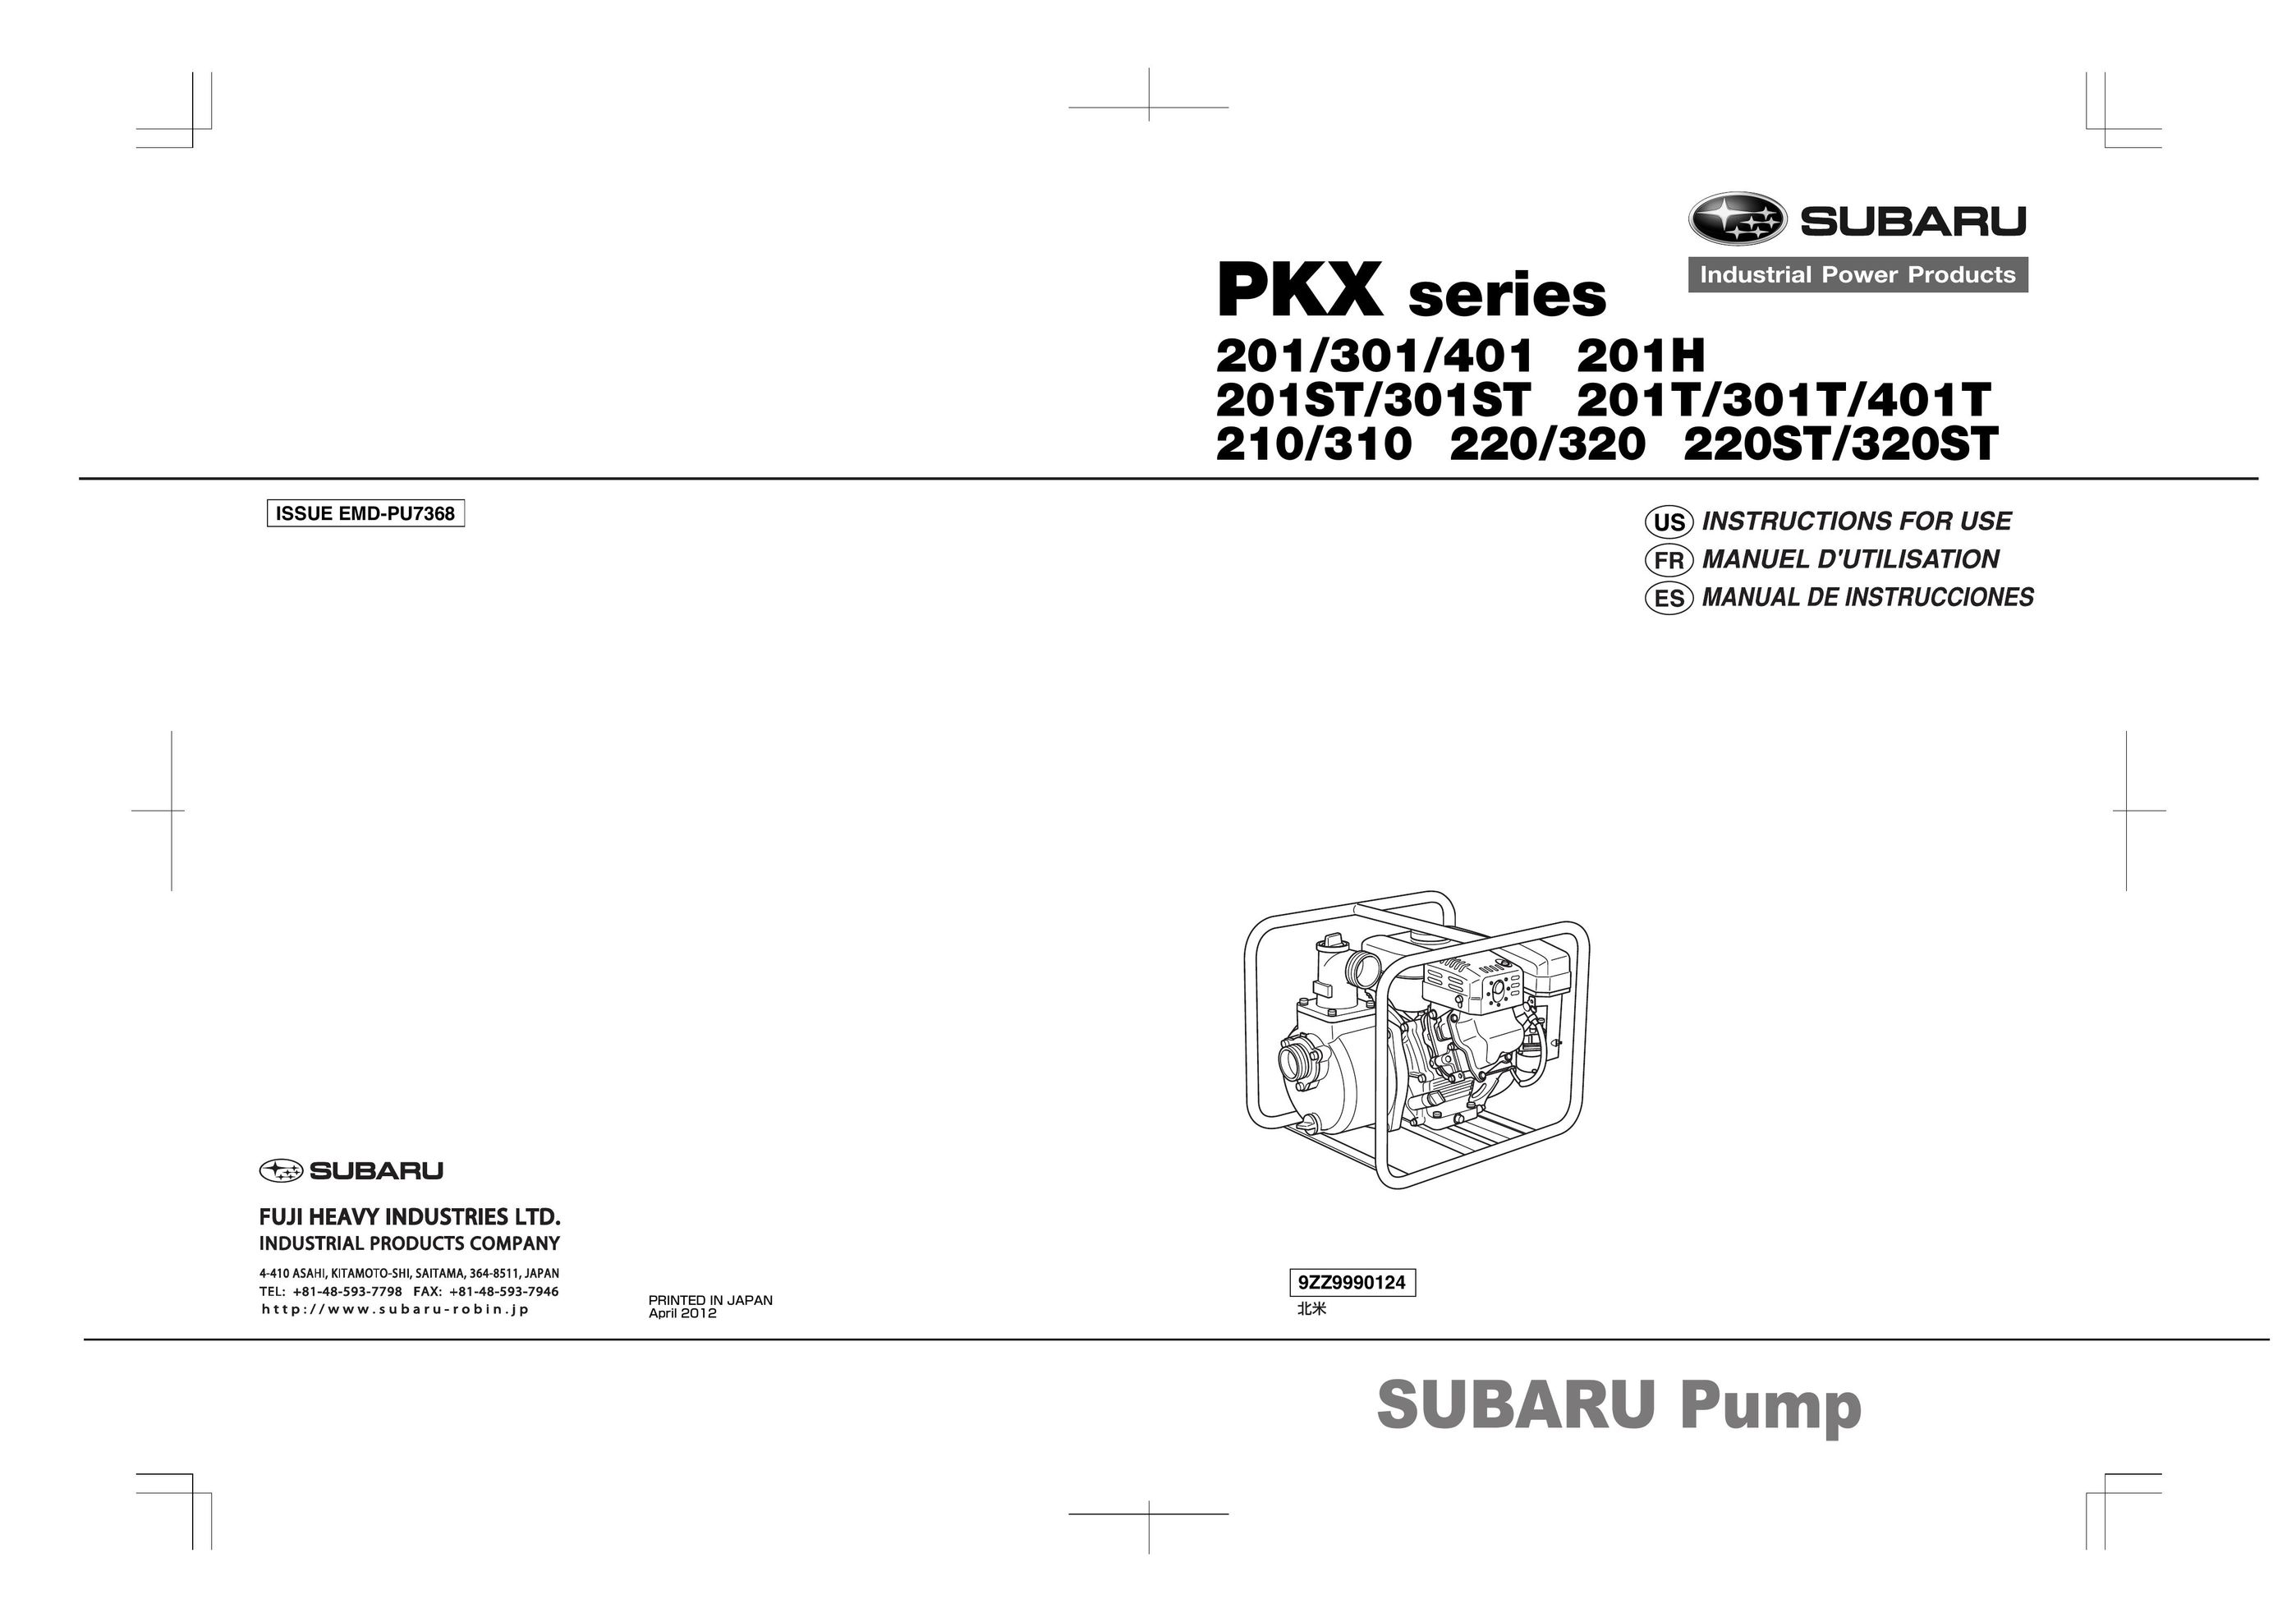 Subaru 220ST Heat Pump User Manual